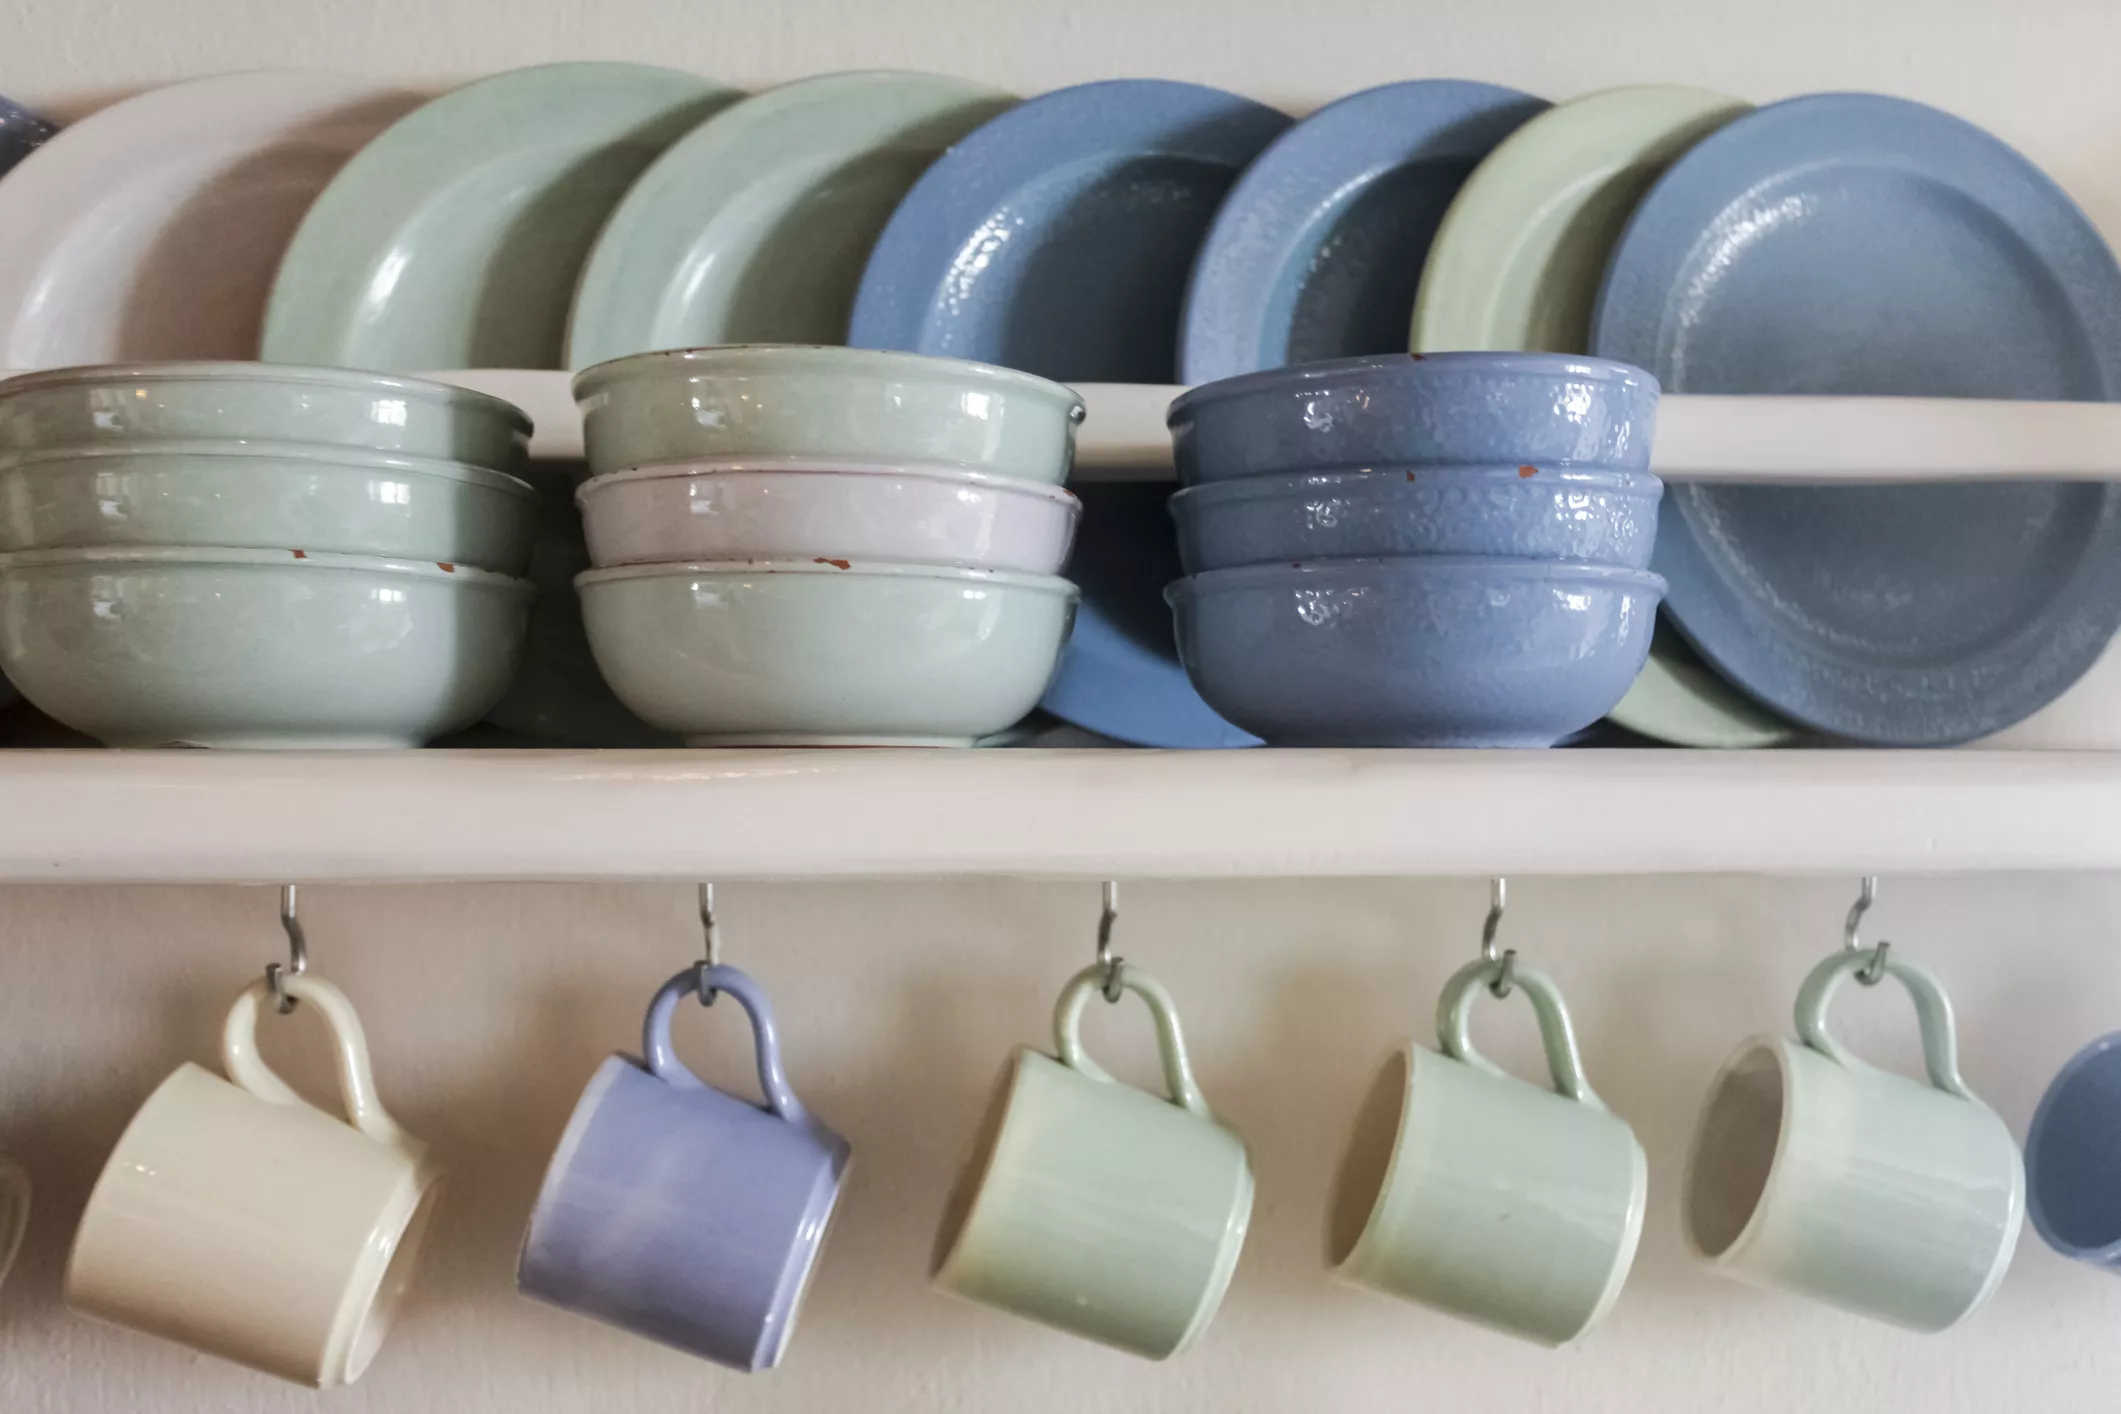 Ceramic plates, mugs, and bowls on a shelf